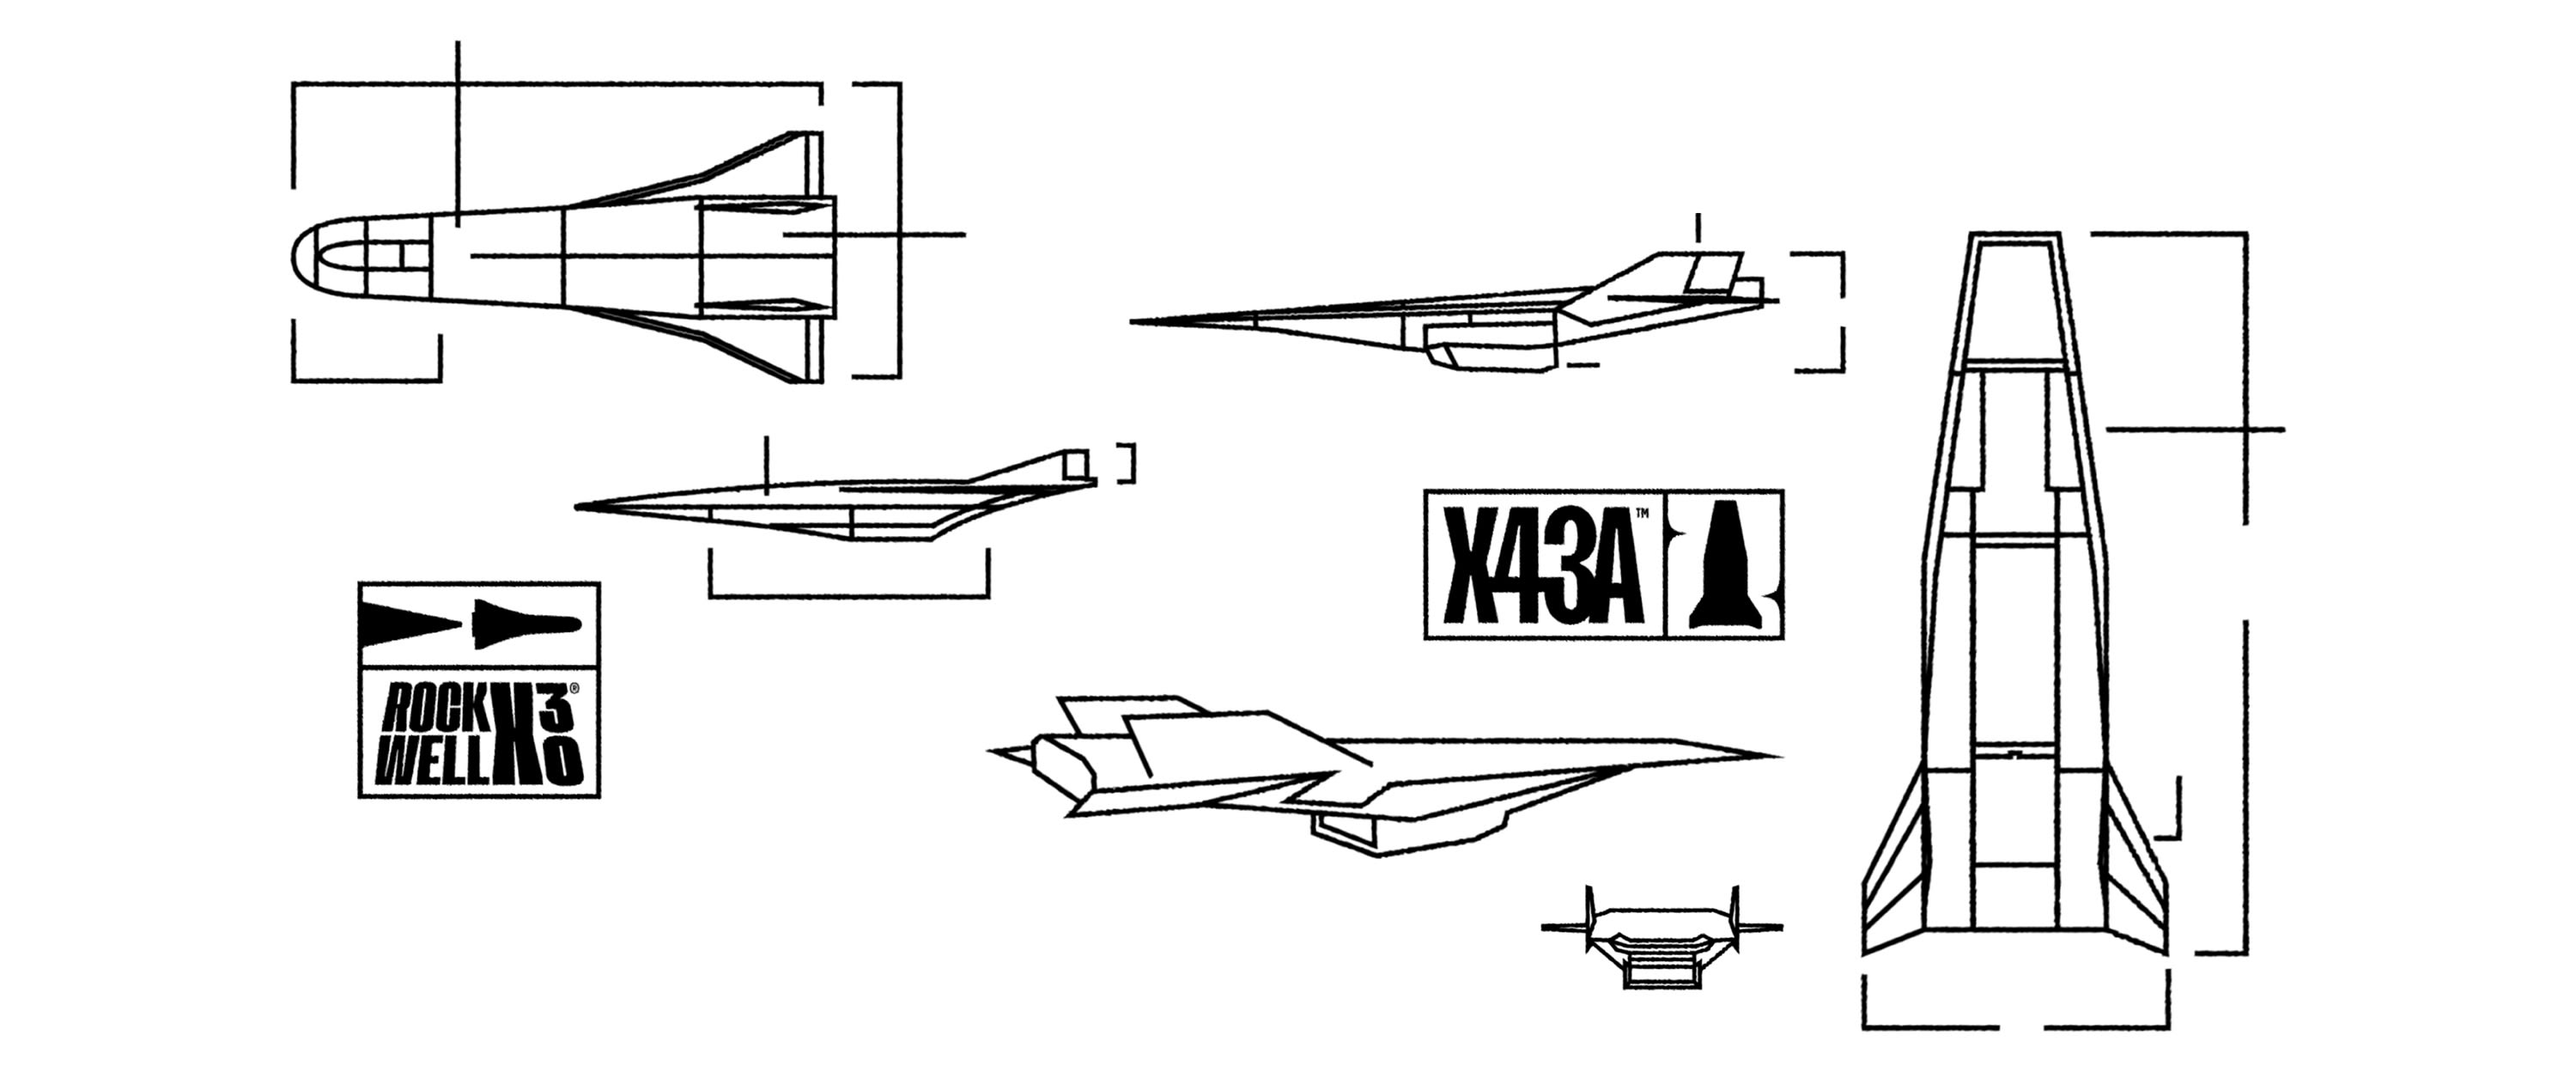 nasa x  43 blueprints